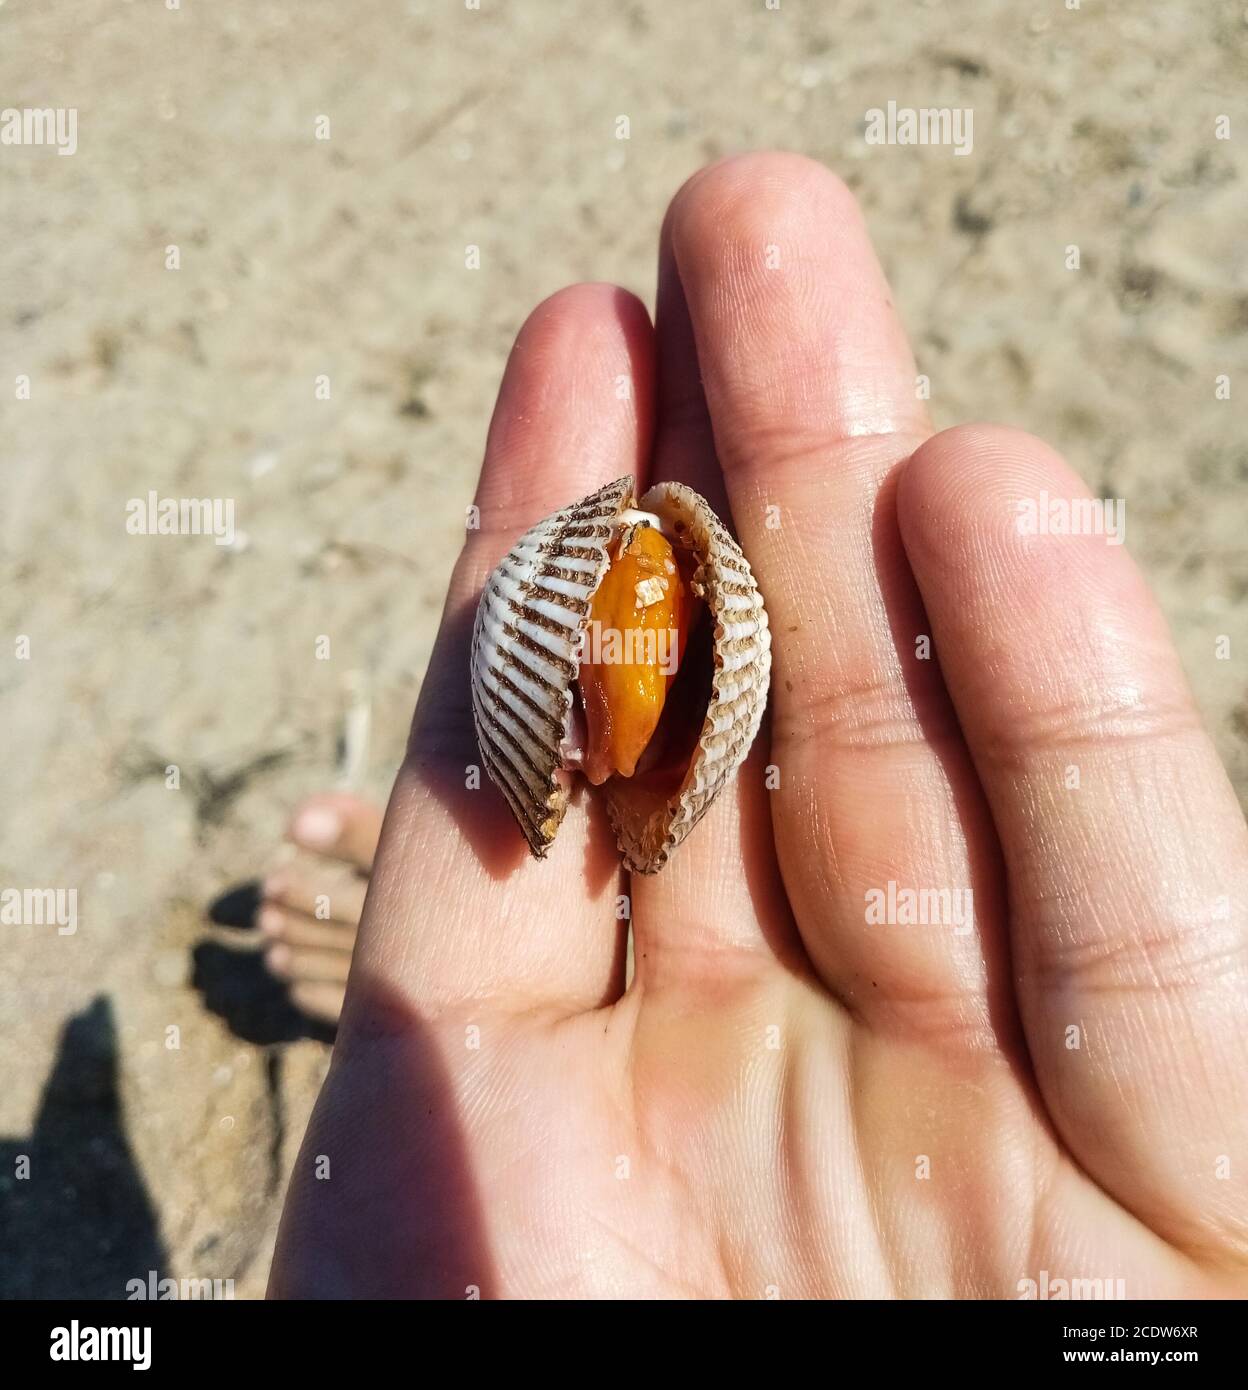 Sehr große leckere Cockle Clam Meeresfrüchte im Vergleich mit Hand Stockfoto